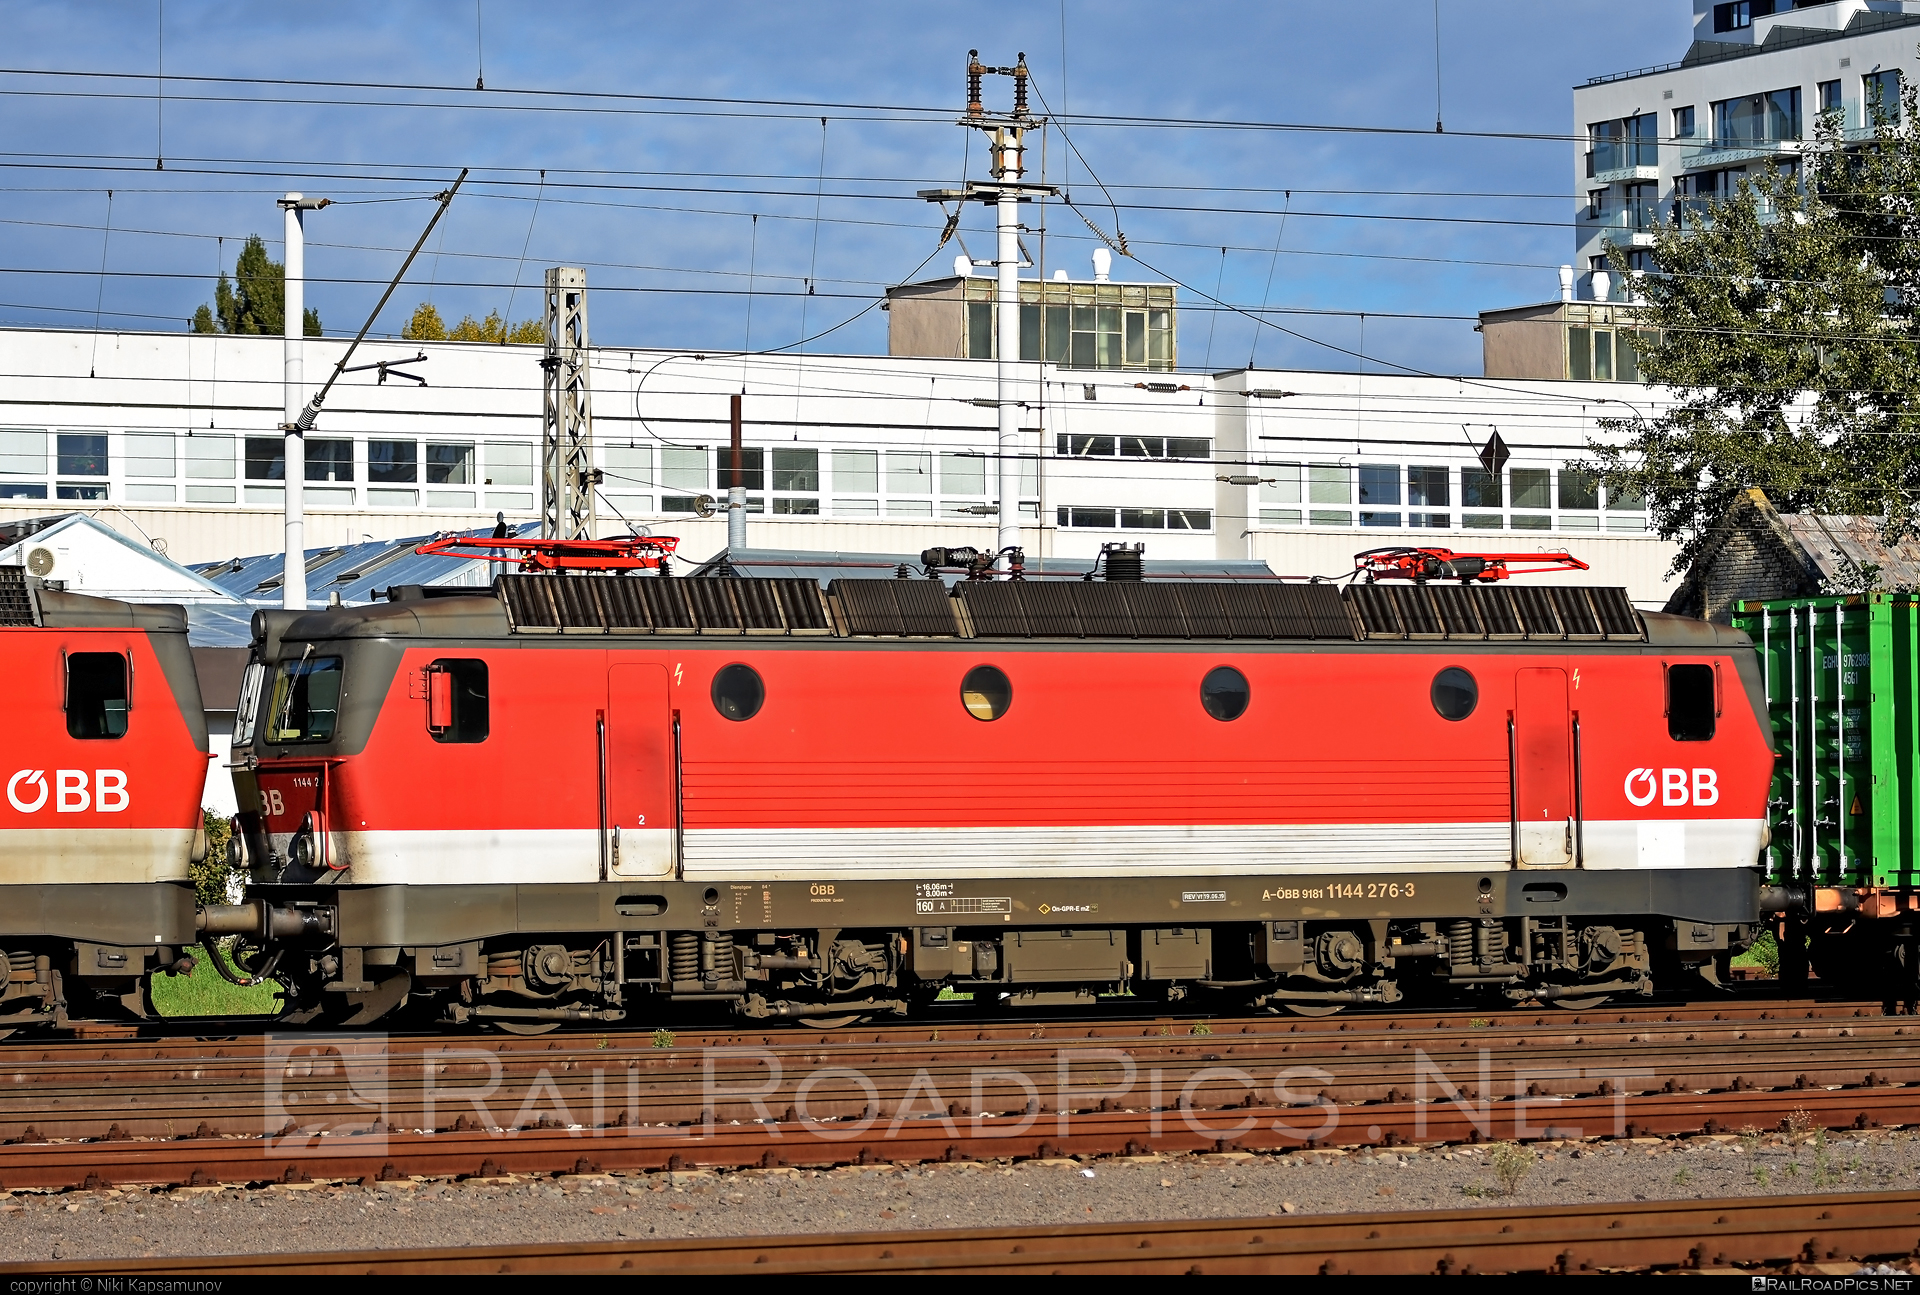 SGP ÖBB Class 1144 - 1144 276 operated by Rail Cargo Austria AG #obb #obb1144 #obbClass1144 #osterreichischebundesbahnen #sgp #sgp1144 #simmeringgrazpauker